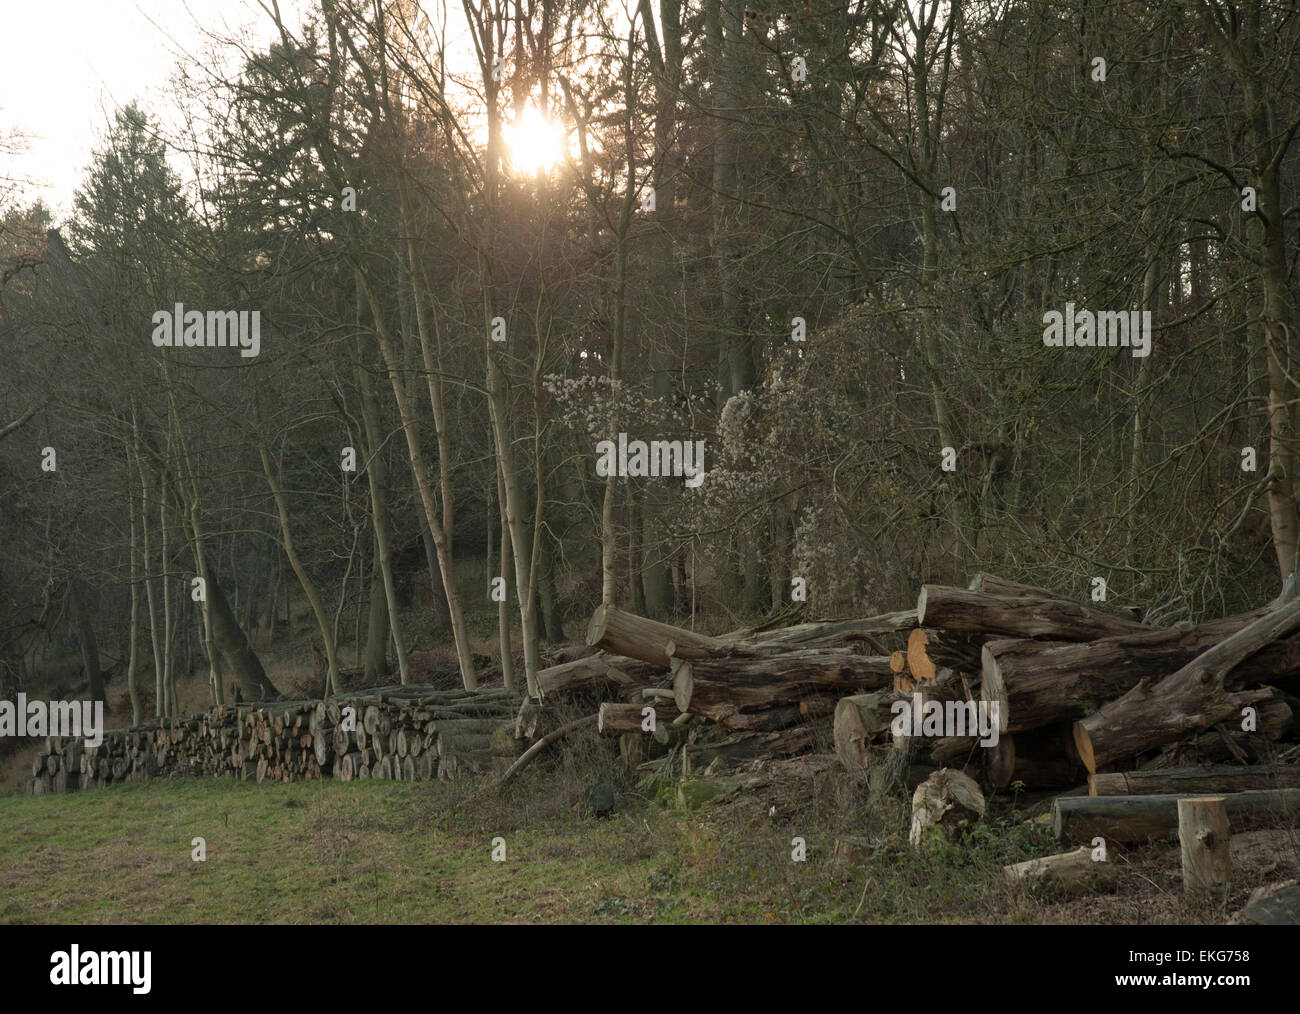 Les souches d'arbres abattus dans les bois empilés Banque D'Images